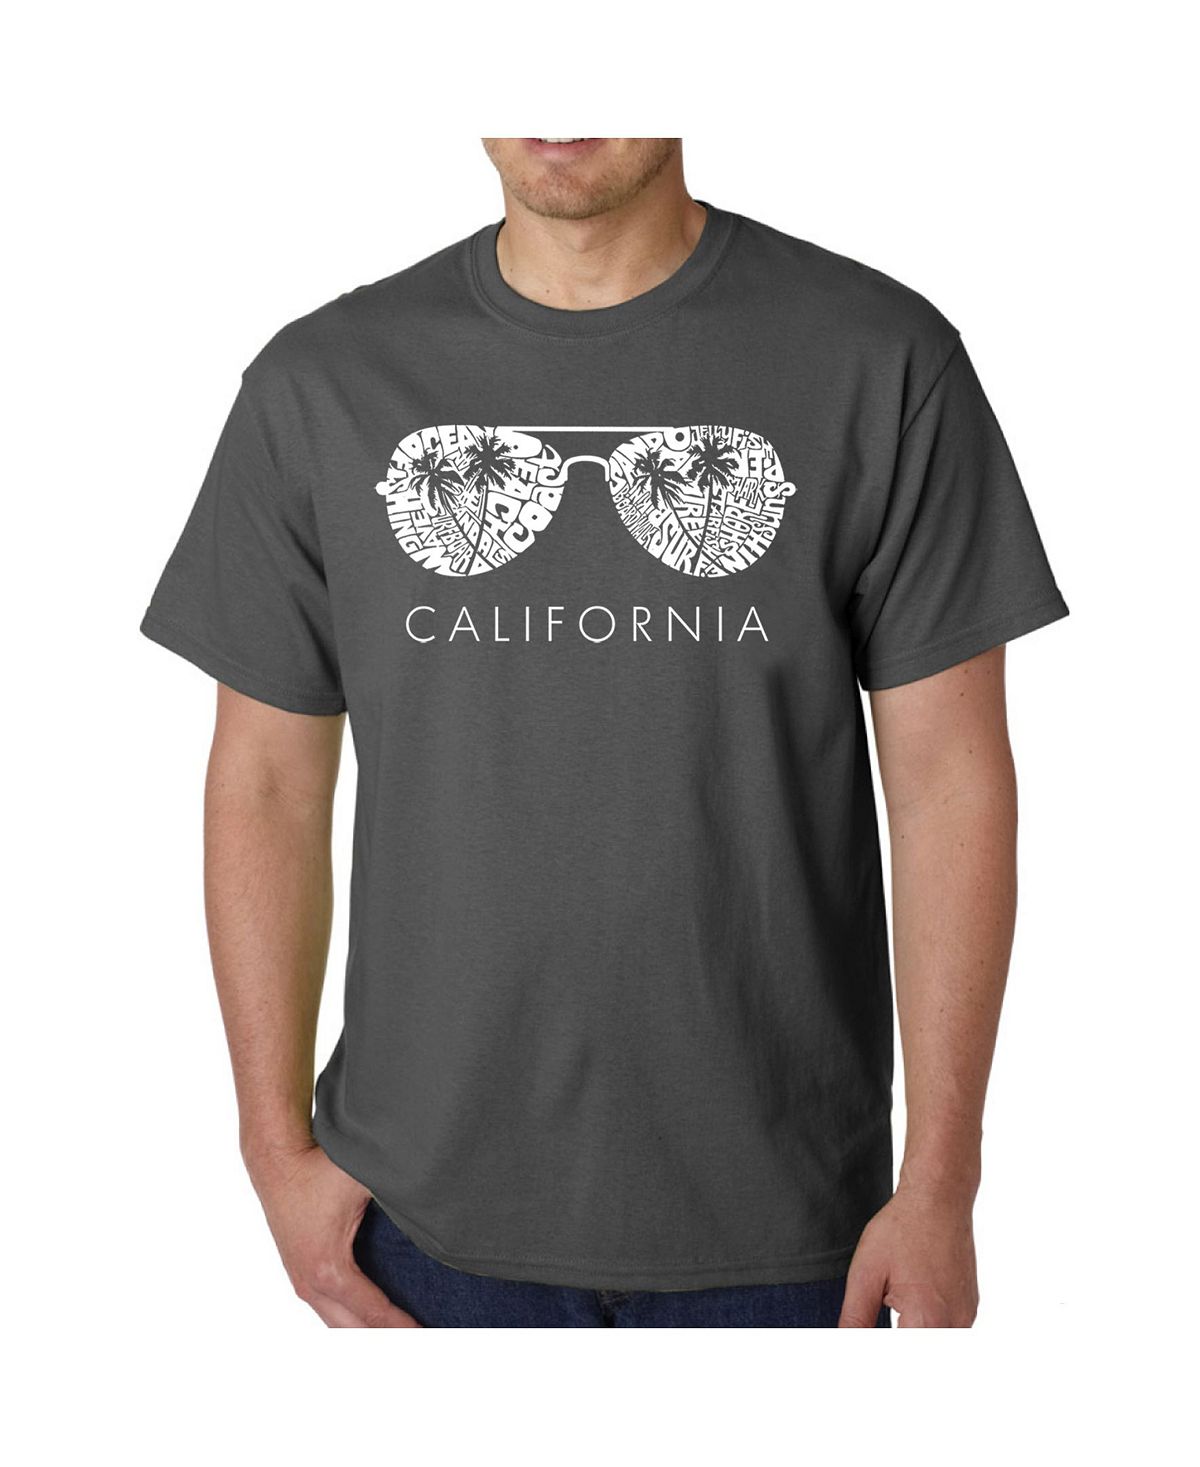 Мужская футболка word art - california shades LA Pop Art мужская футболка word art california dreamin la pop art серый